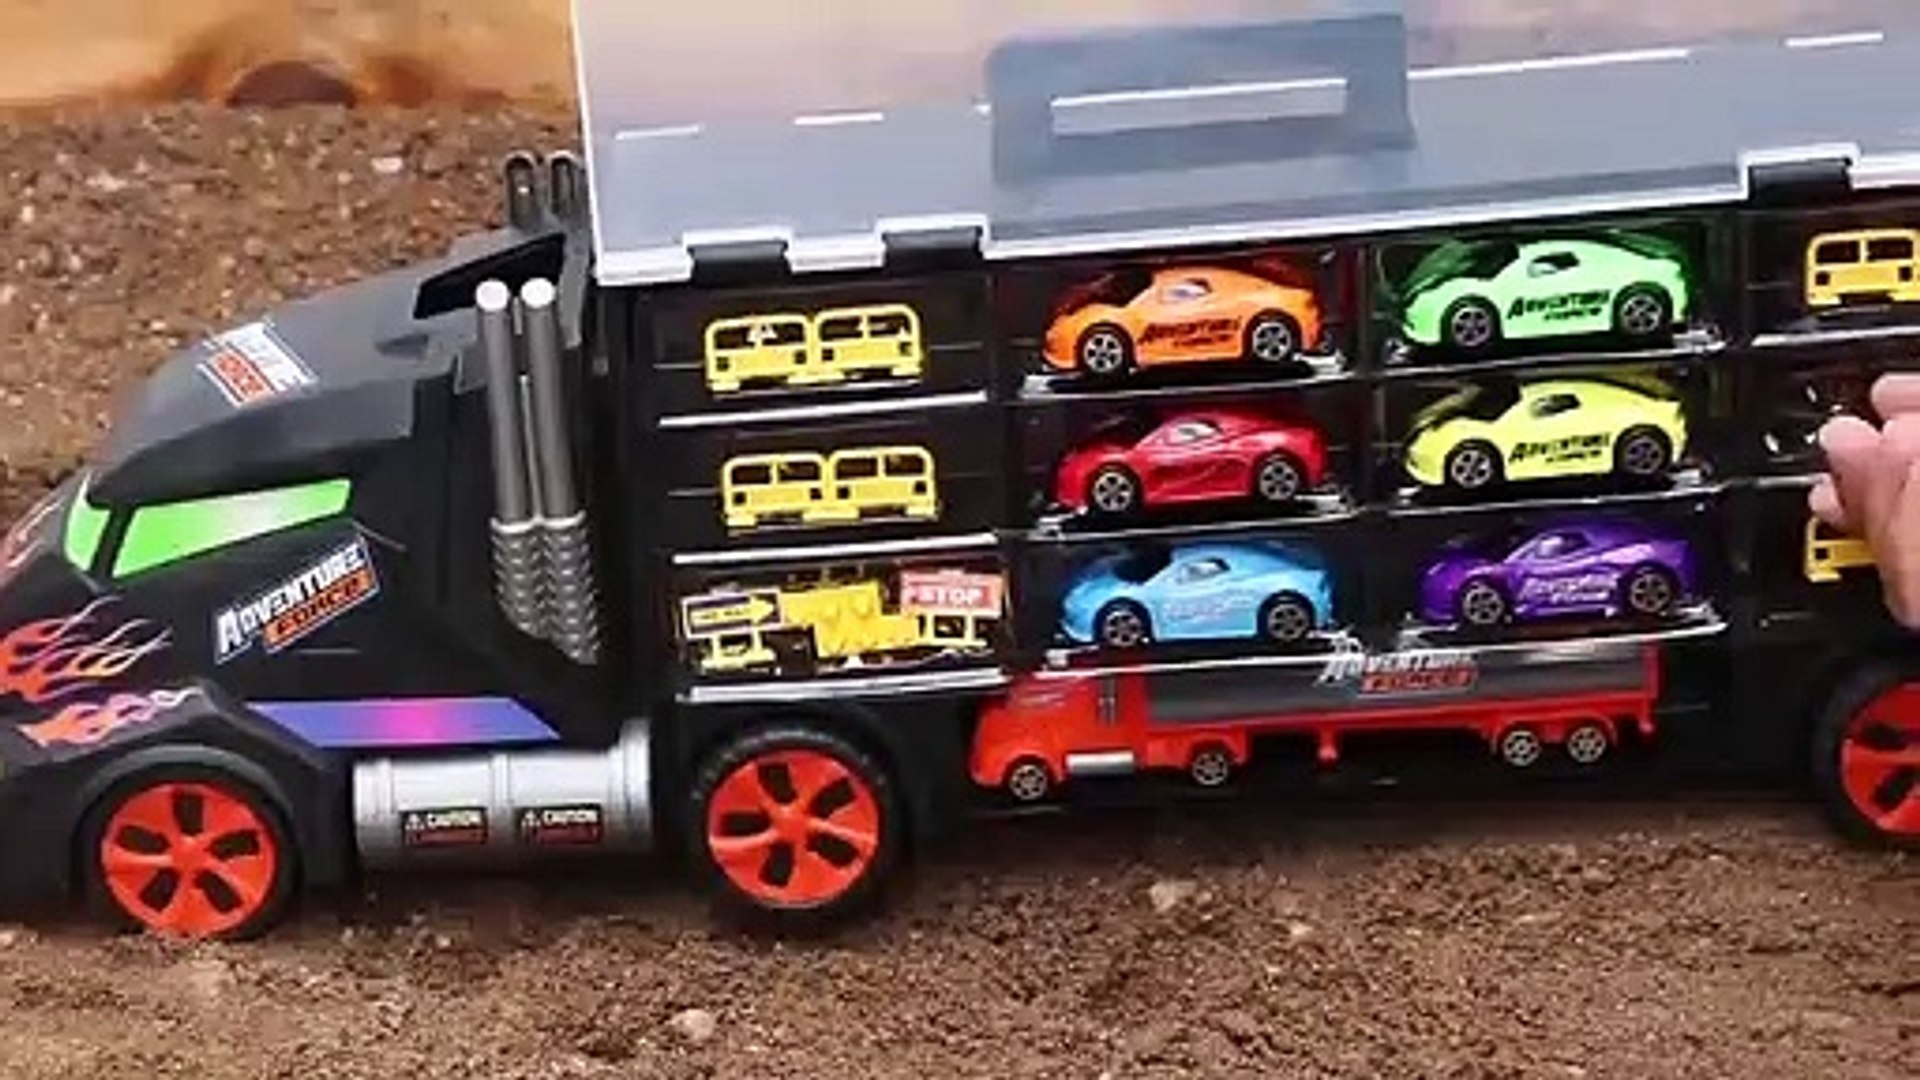 Learn Colors Aprendiendo colores con los carritos del trailer Gigante -  video Dailymotion